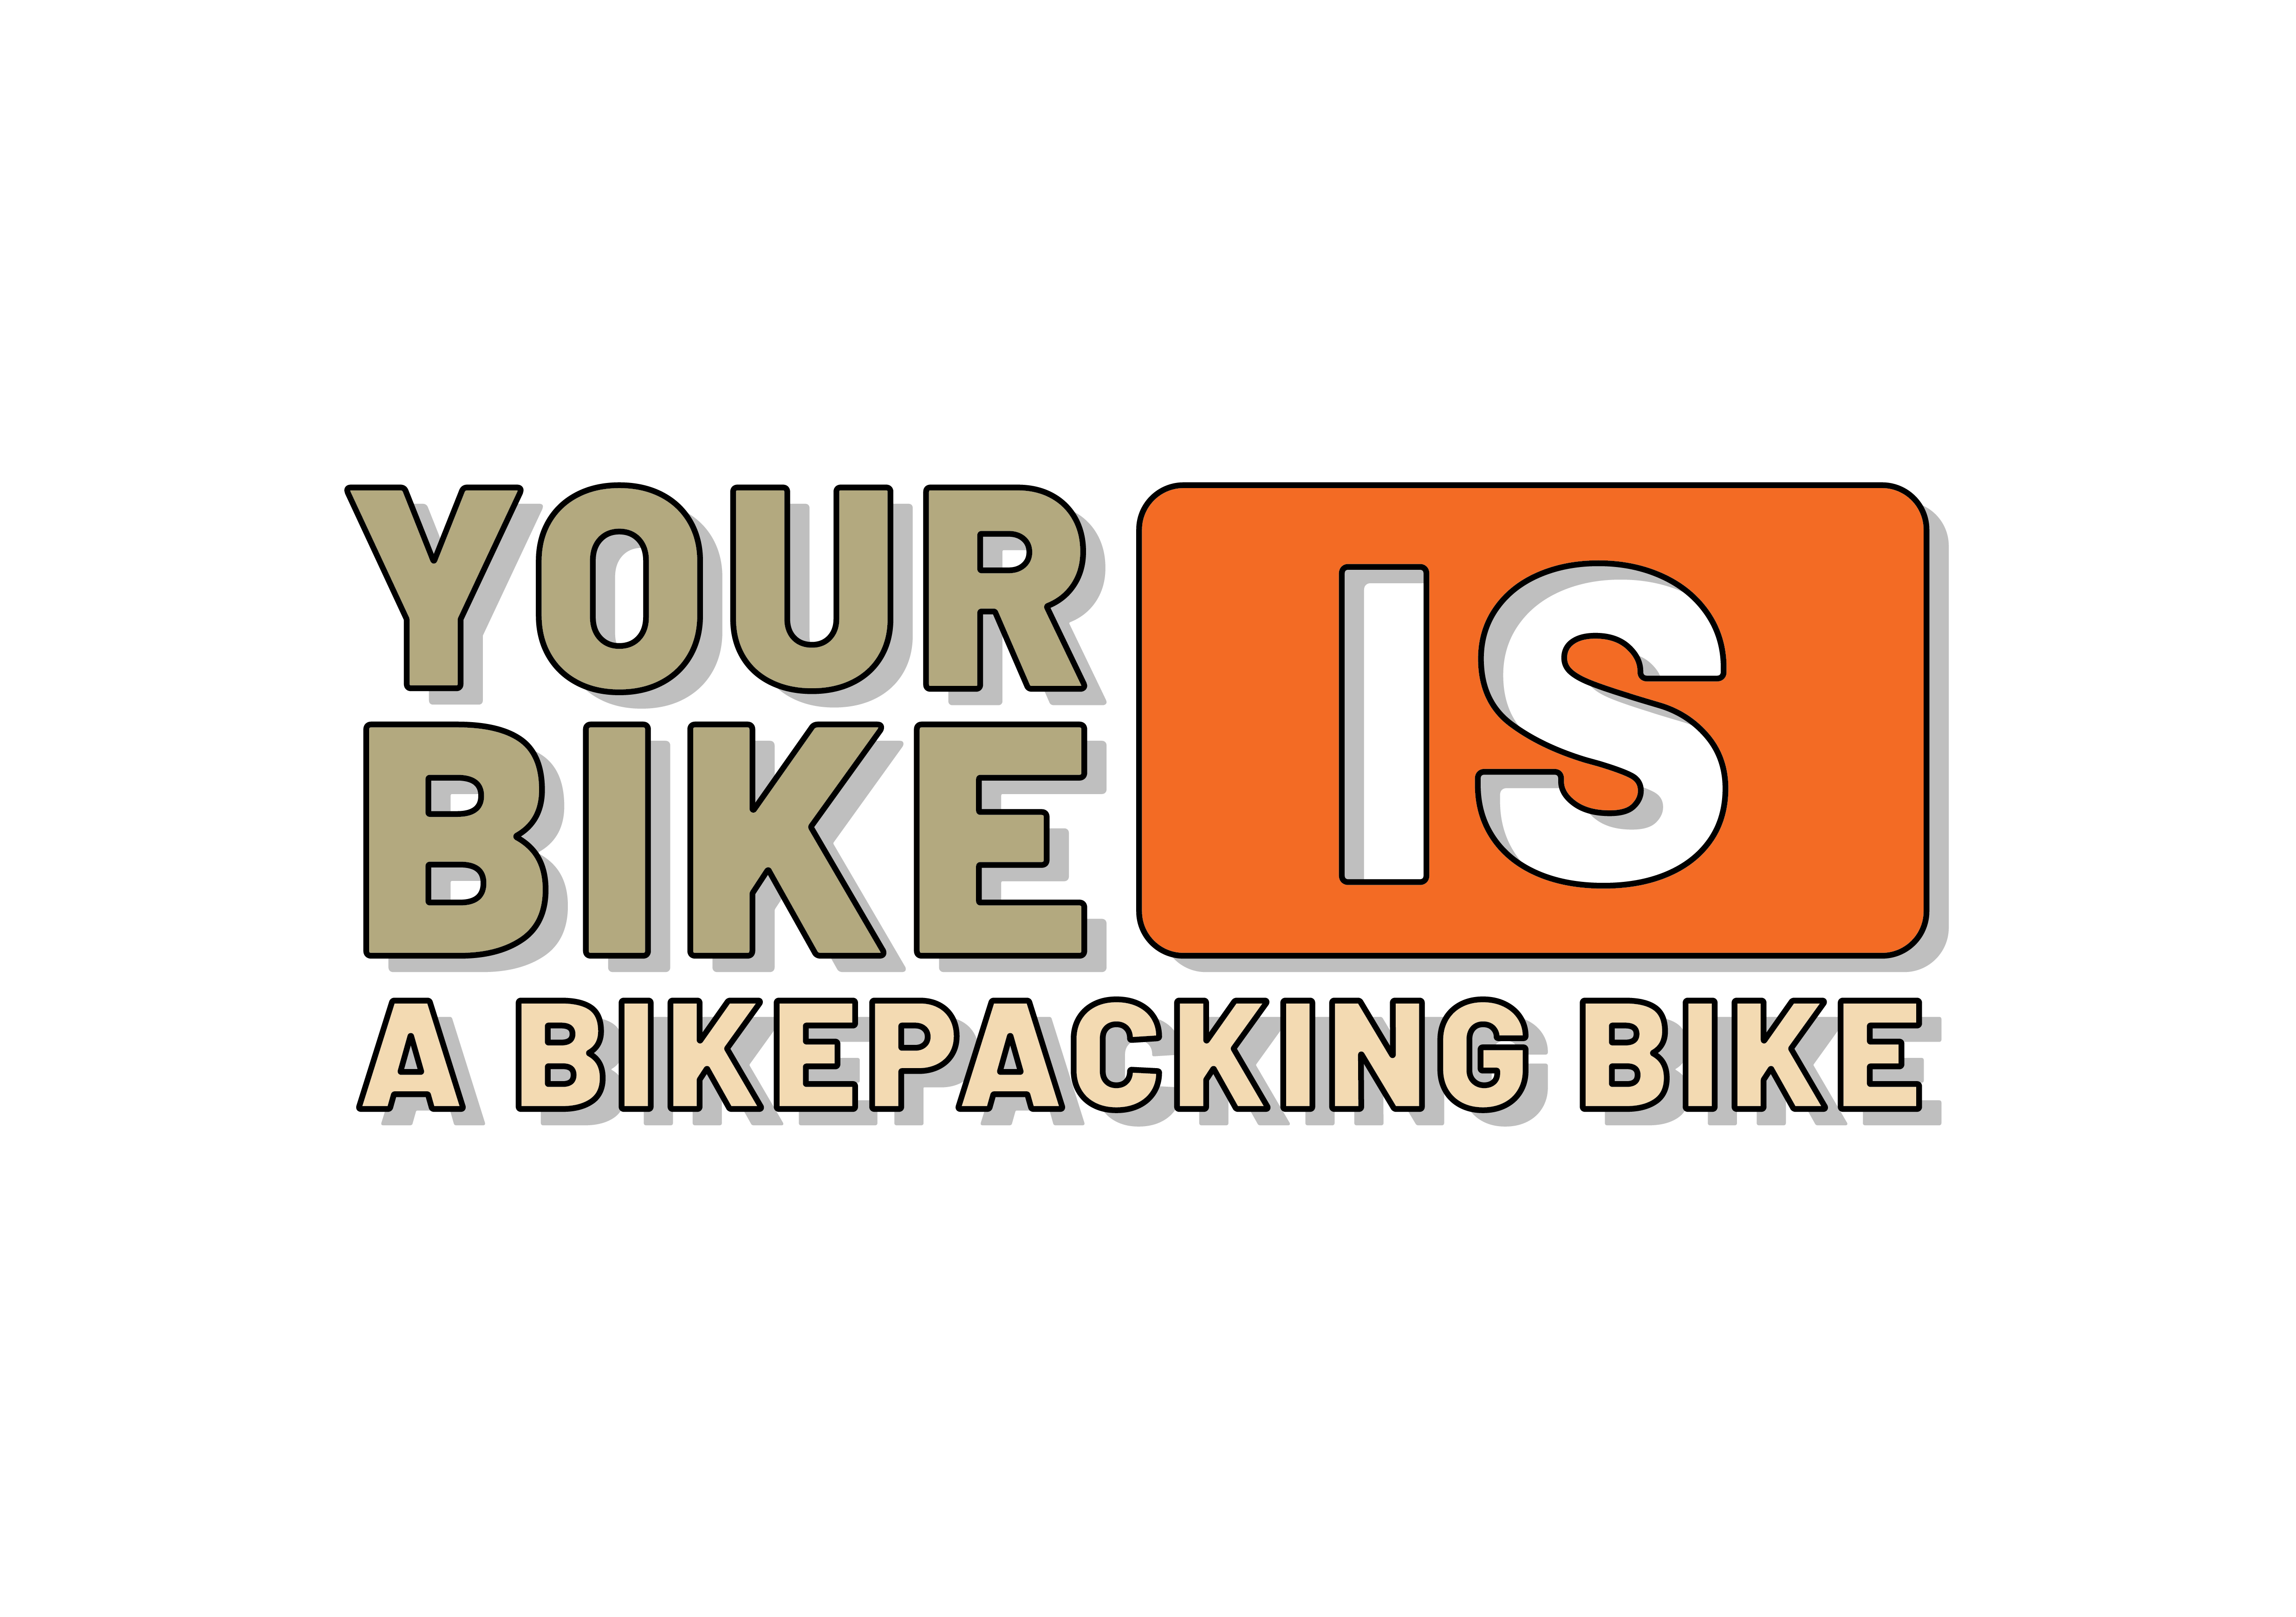 Your Bike Is a Bikepacking Bike